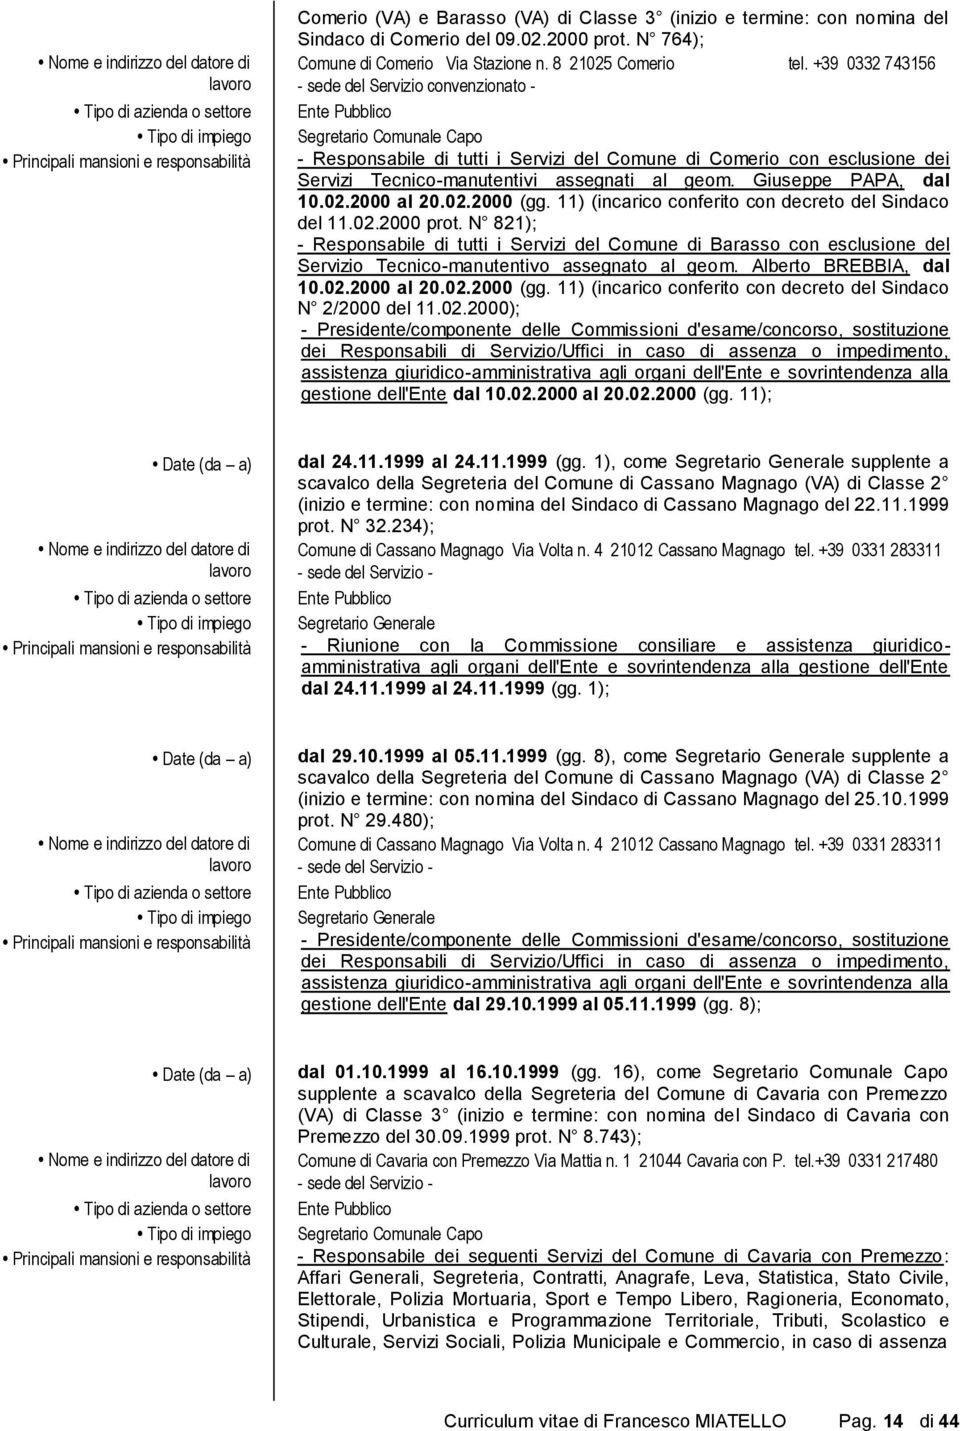 11) (incarico conferito con decreto del Sindaco del 11.02.2000 prot. N 821); - Responsabile di tutti i Servizi del Comune di Barasso con esclusione del Servizio Tecnico-manutentivo assegnato al geom.